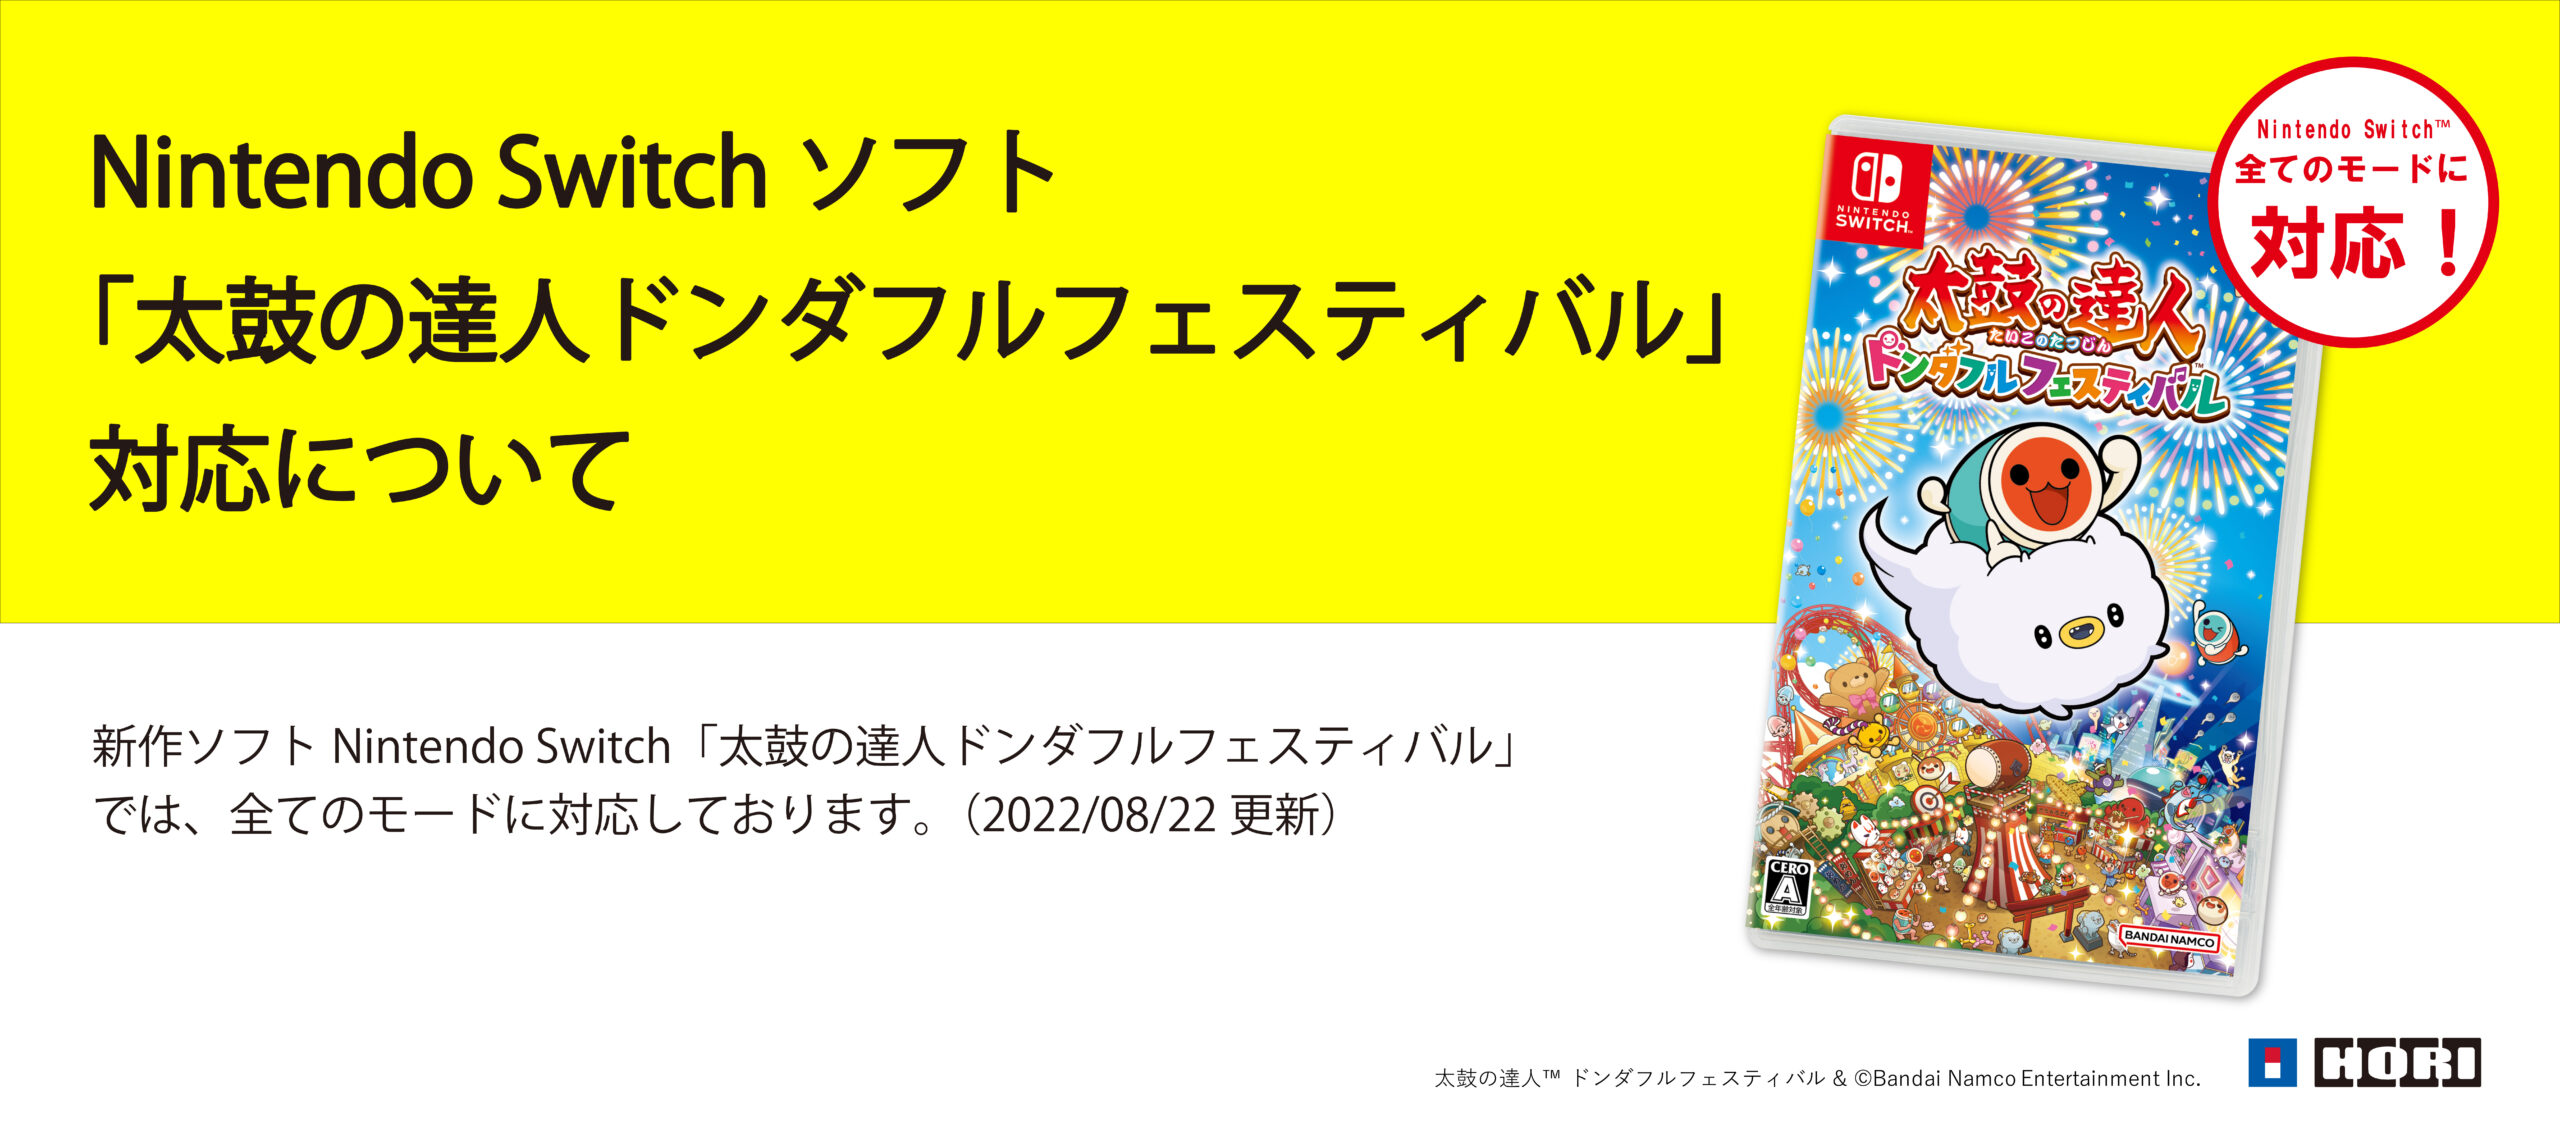 Nintendo Switchば～じょん!と専用コントローラー太鼓とバチセット 家庭用ゲームソフト ブティック商品